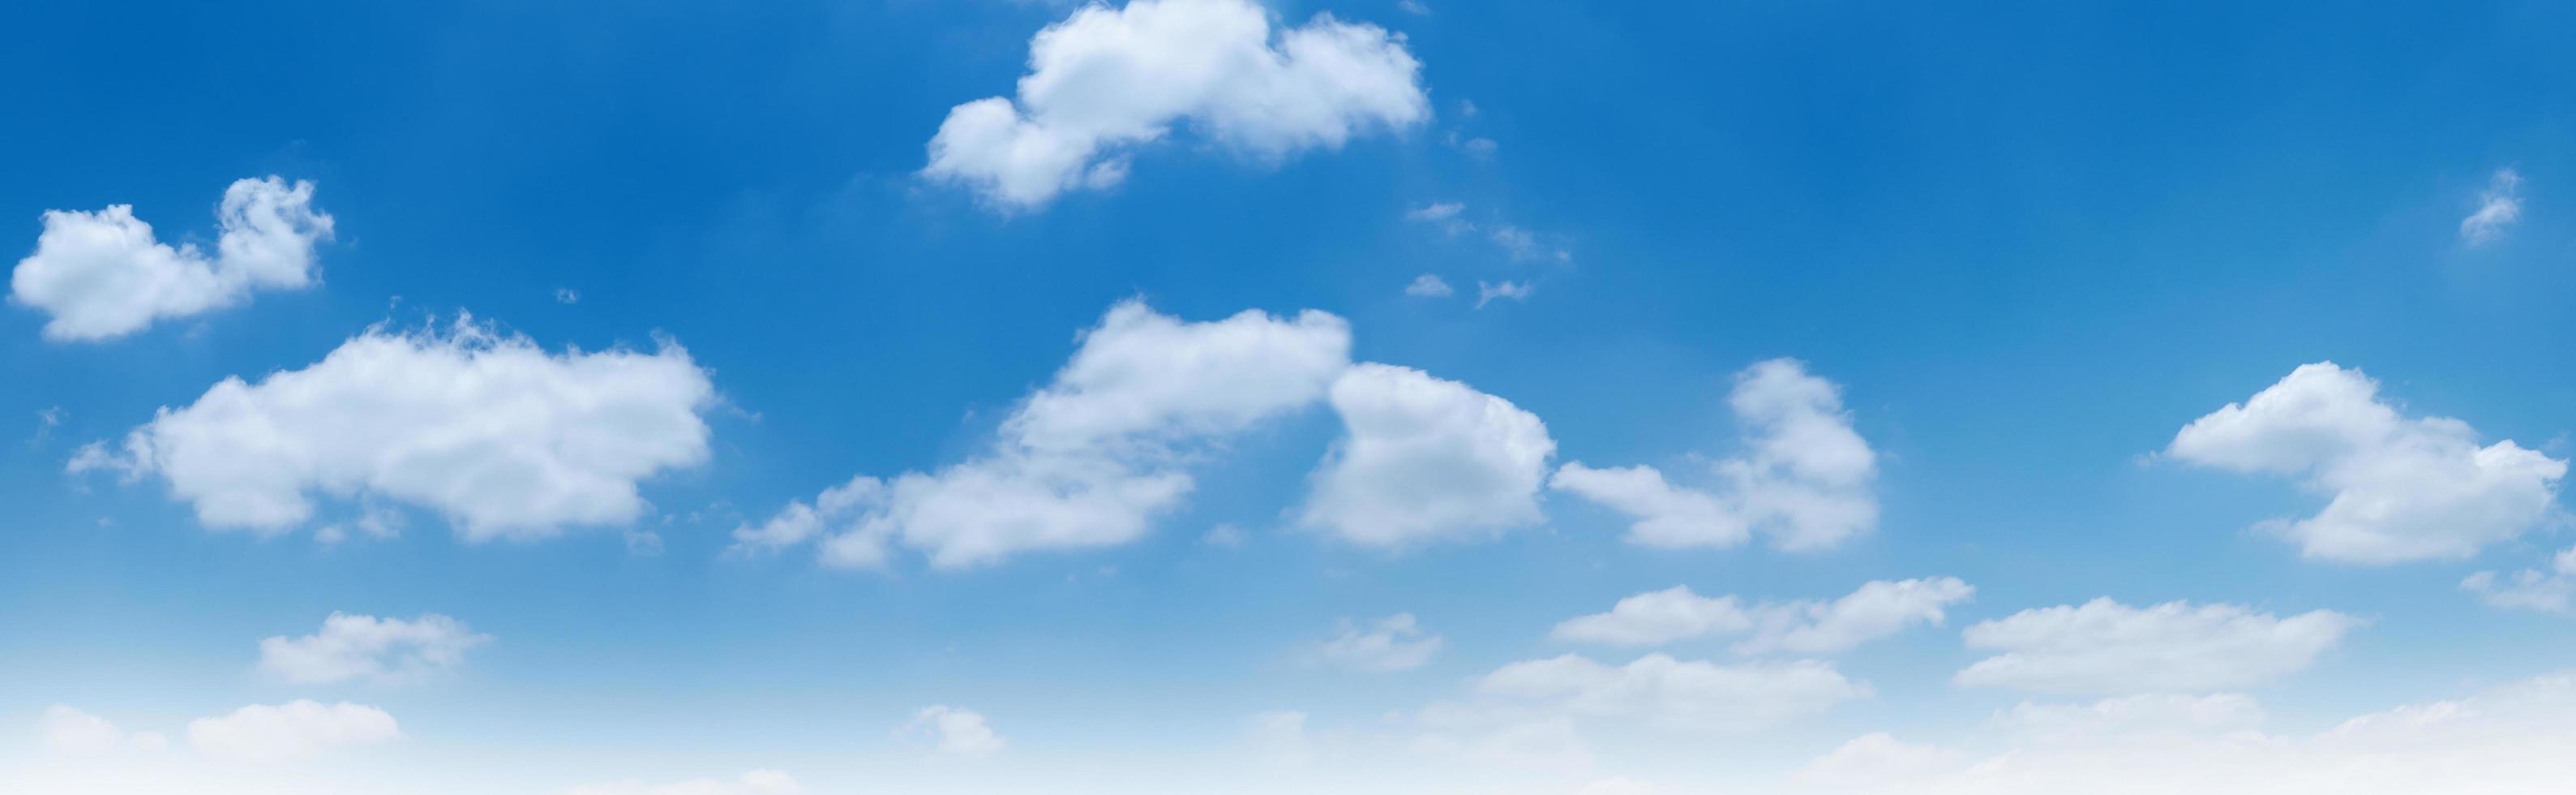 blauer Himmel mit weißem Wolkenhintergrund foto